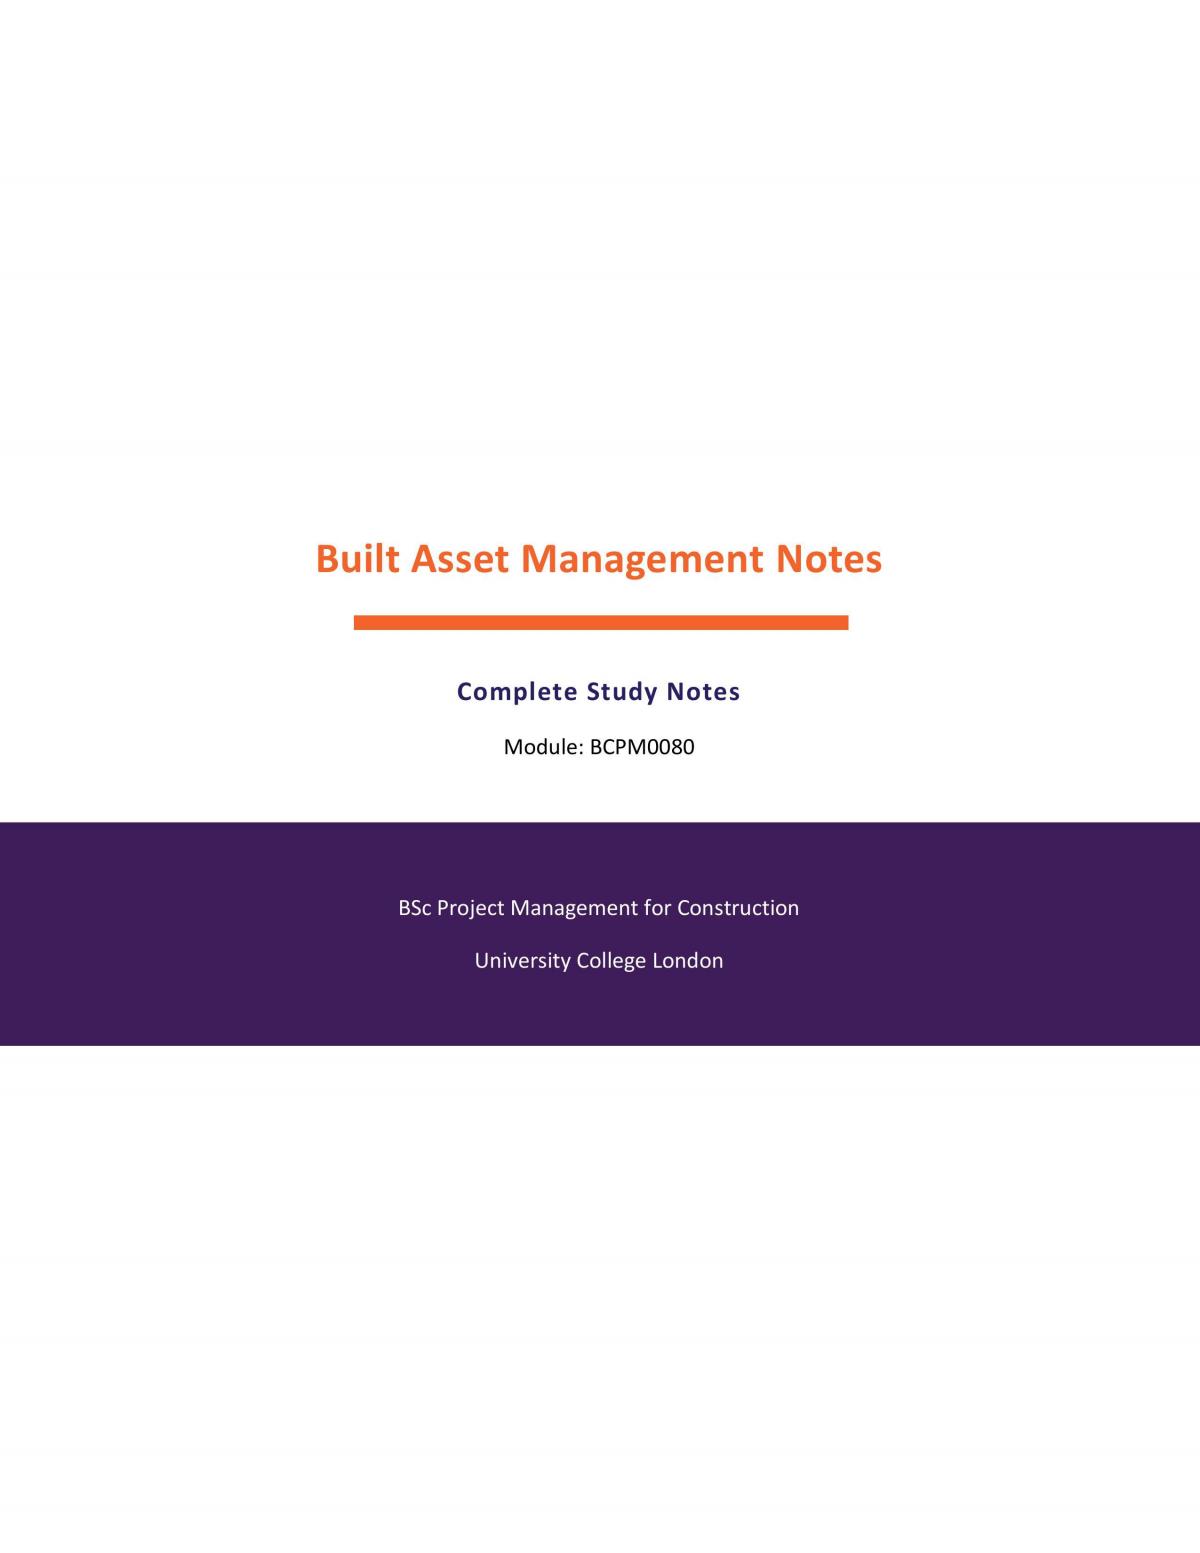 Built Asset Management Complete Study Notes - Page 1